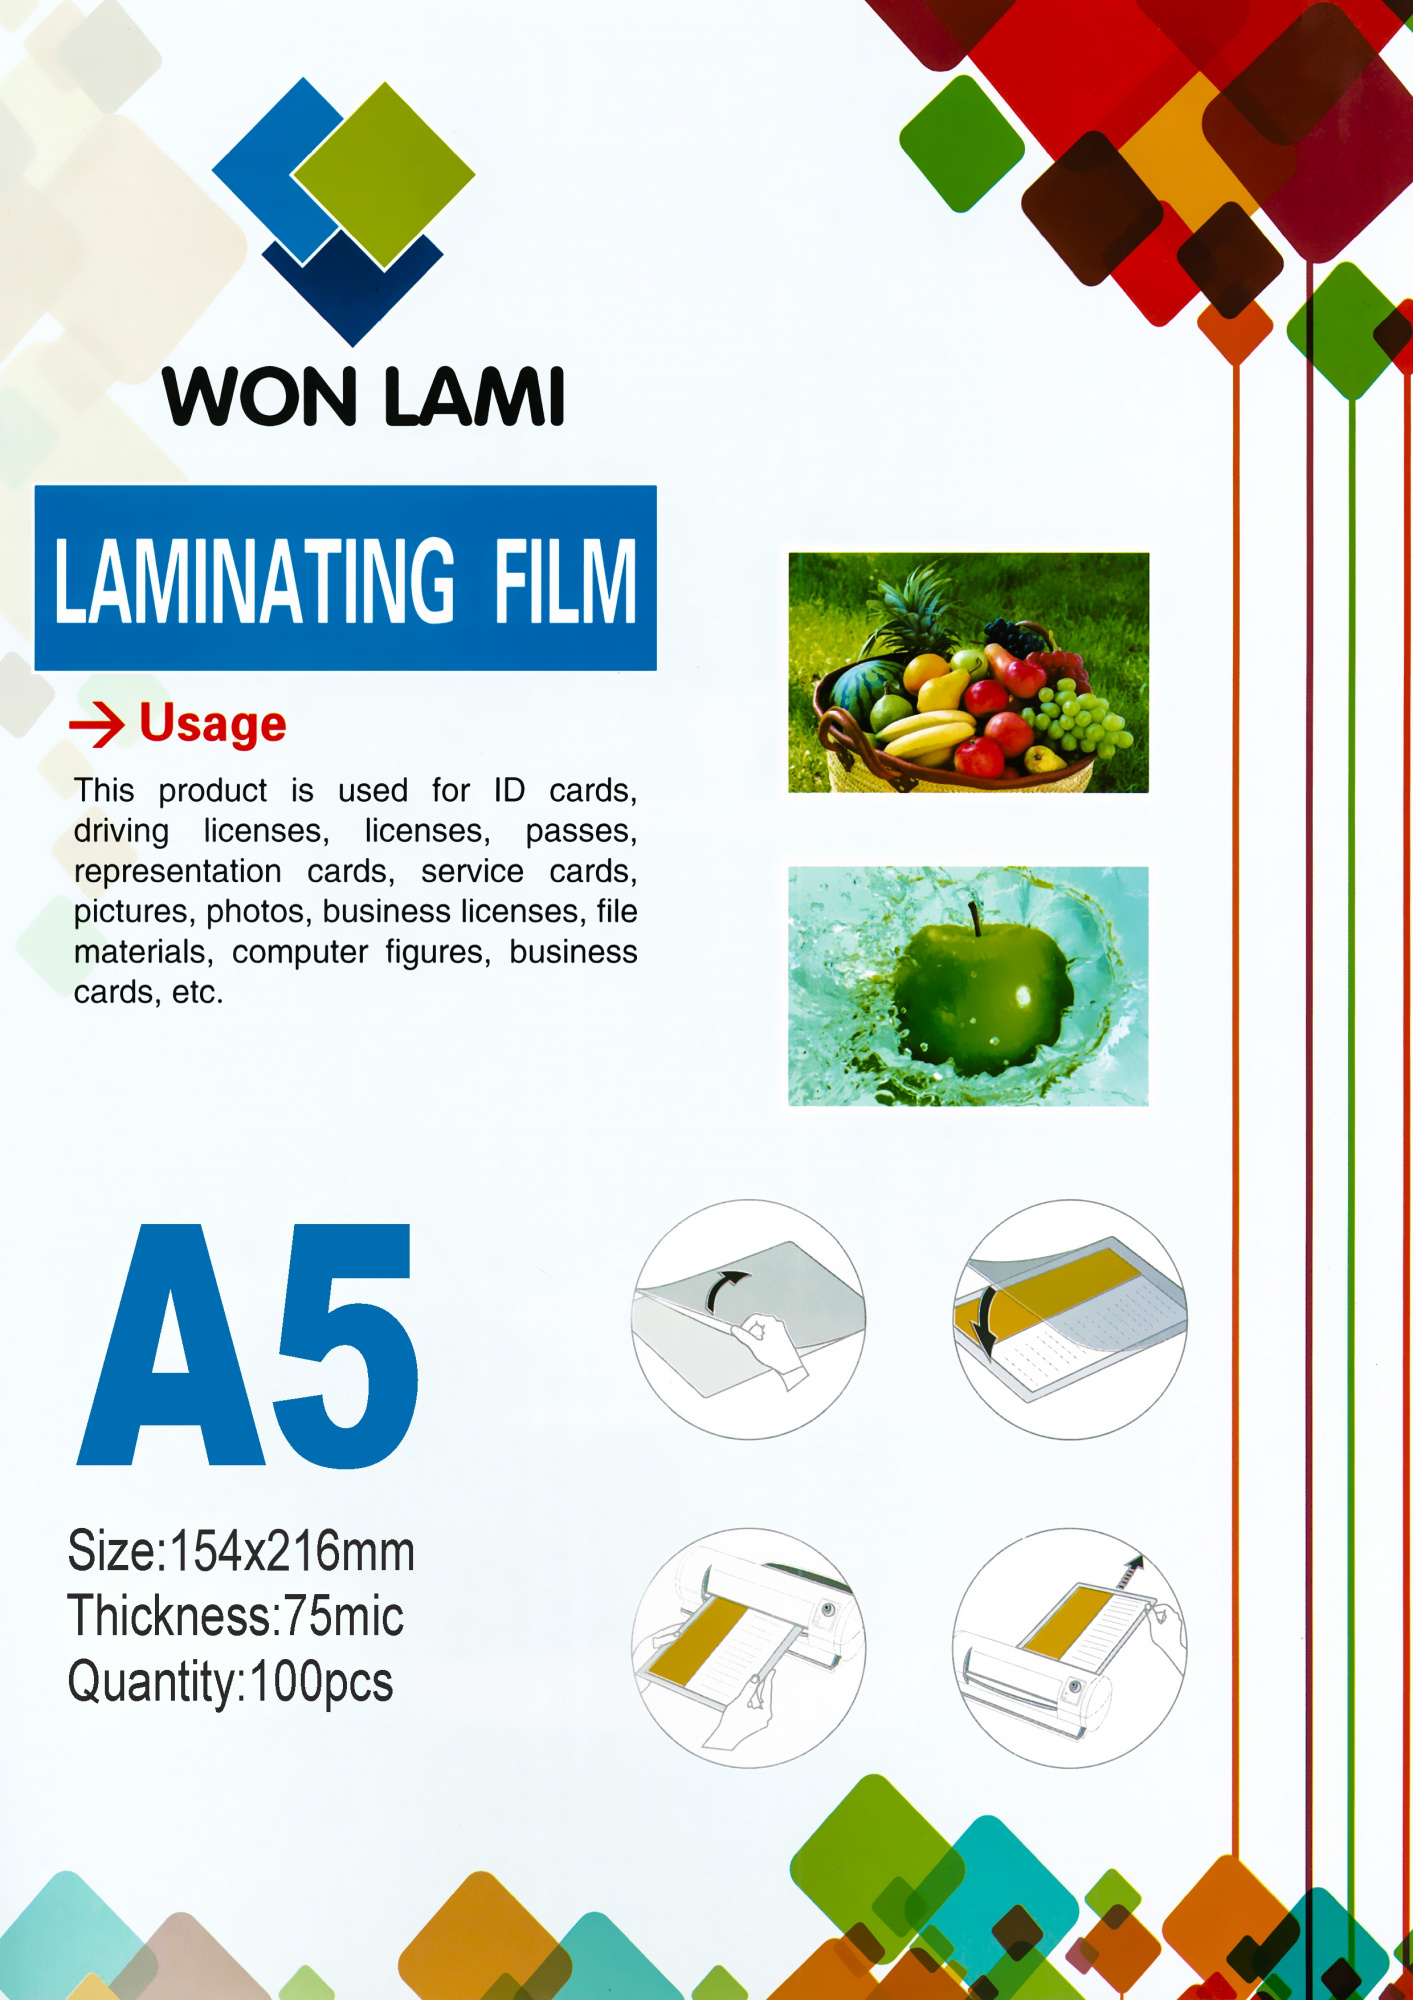 Пленка для ламинирования Won Lami 75мкм, 154x216 (A5), 100 шт., глянцевая (7667)